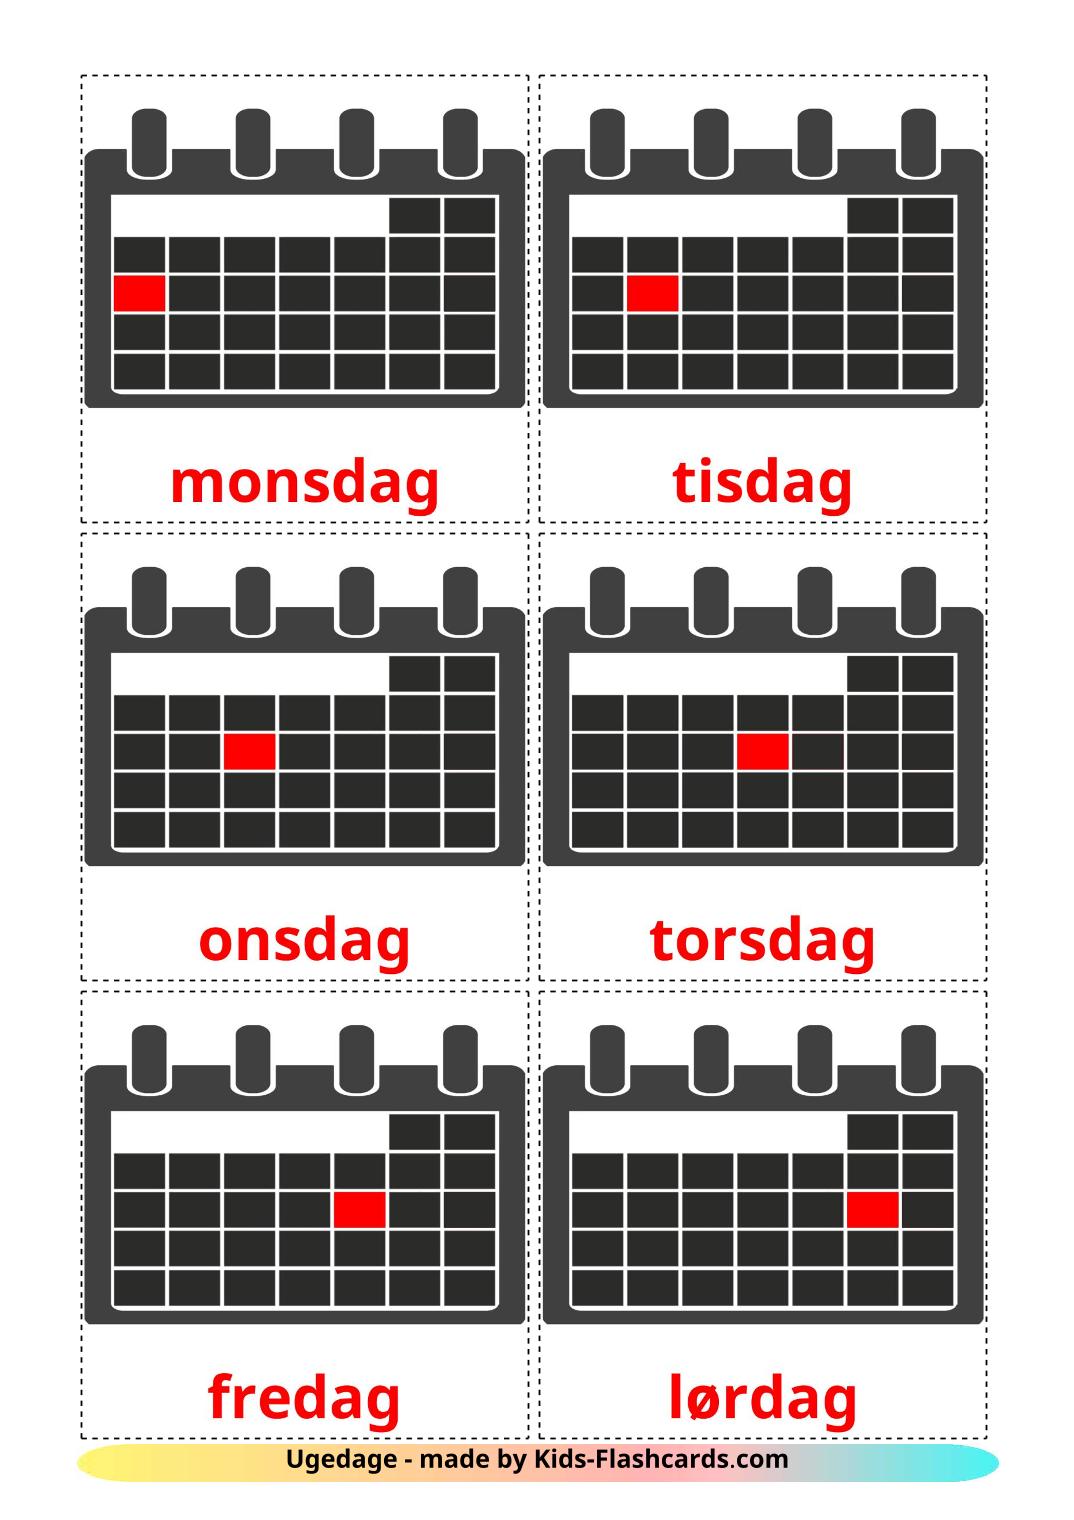 Dagen van de week - 12 gratis printbare danske kaarten